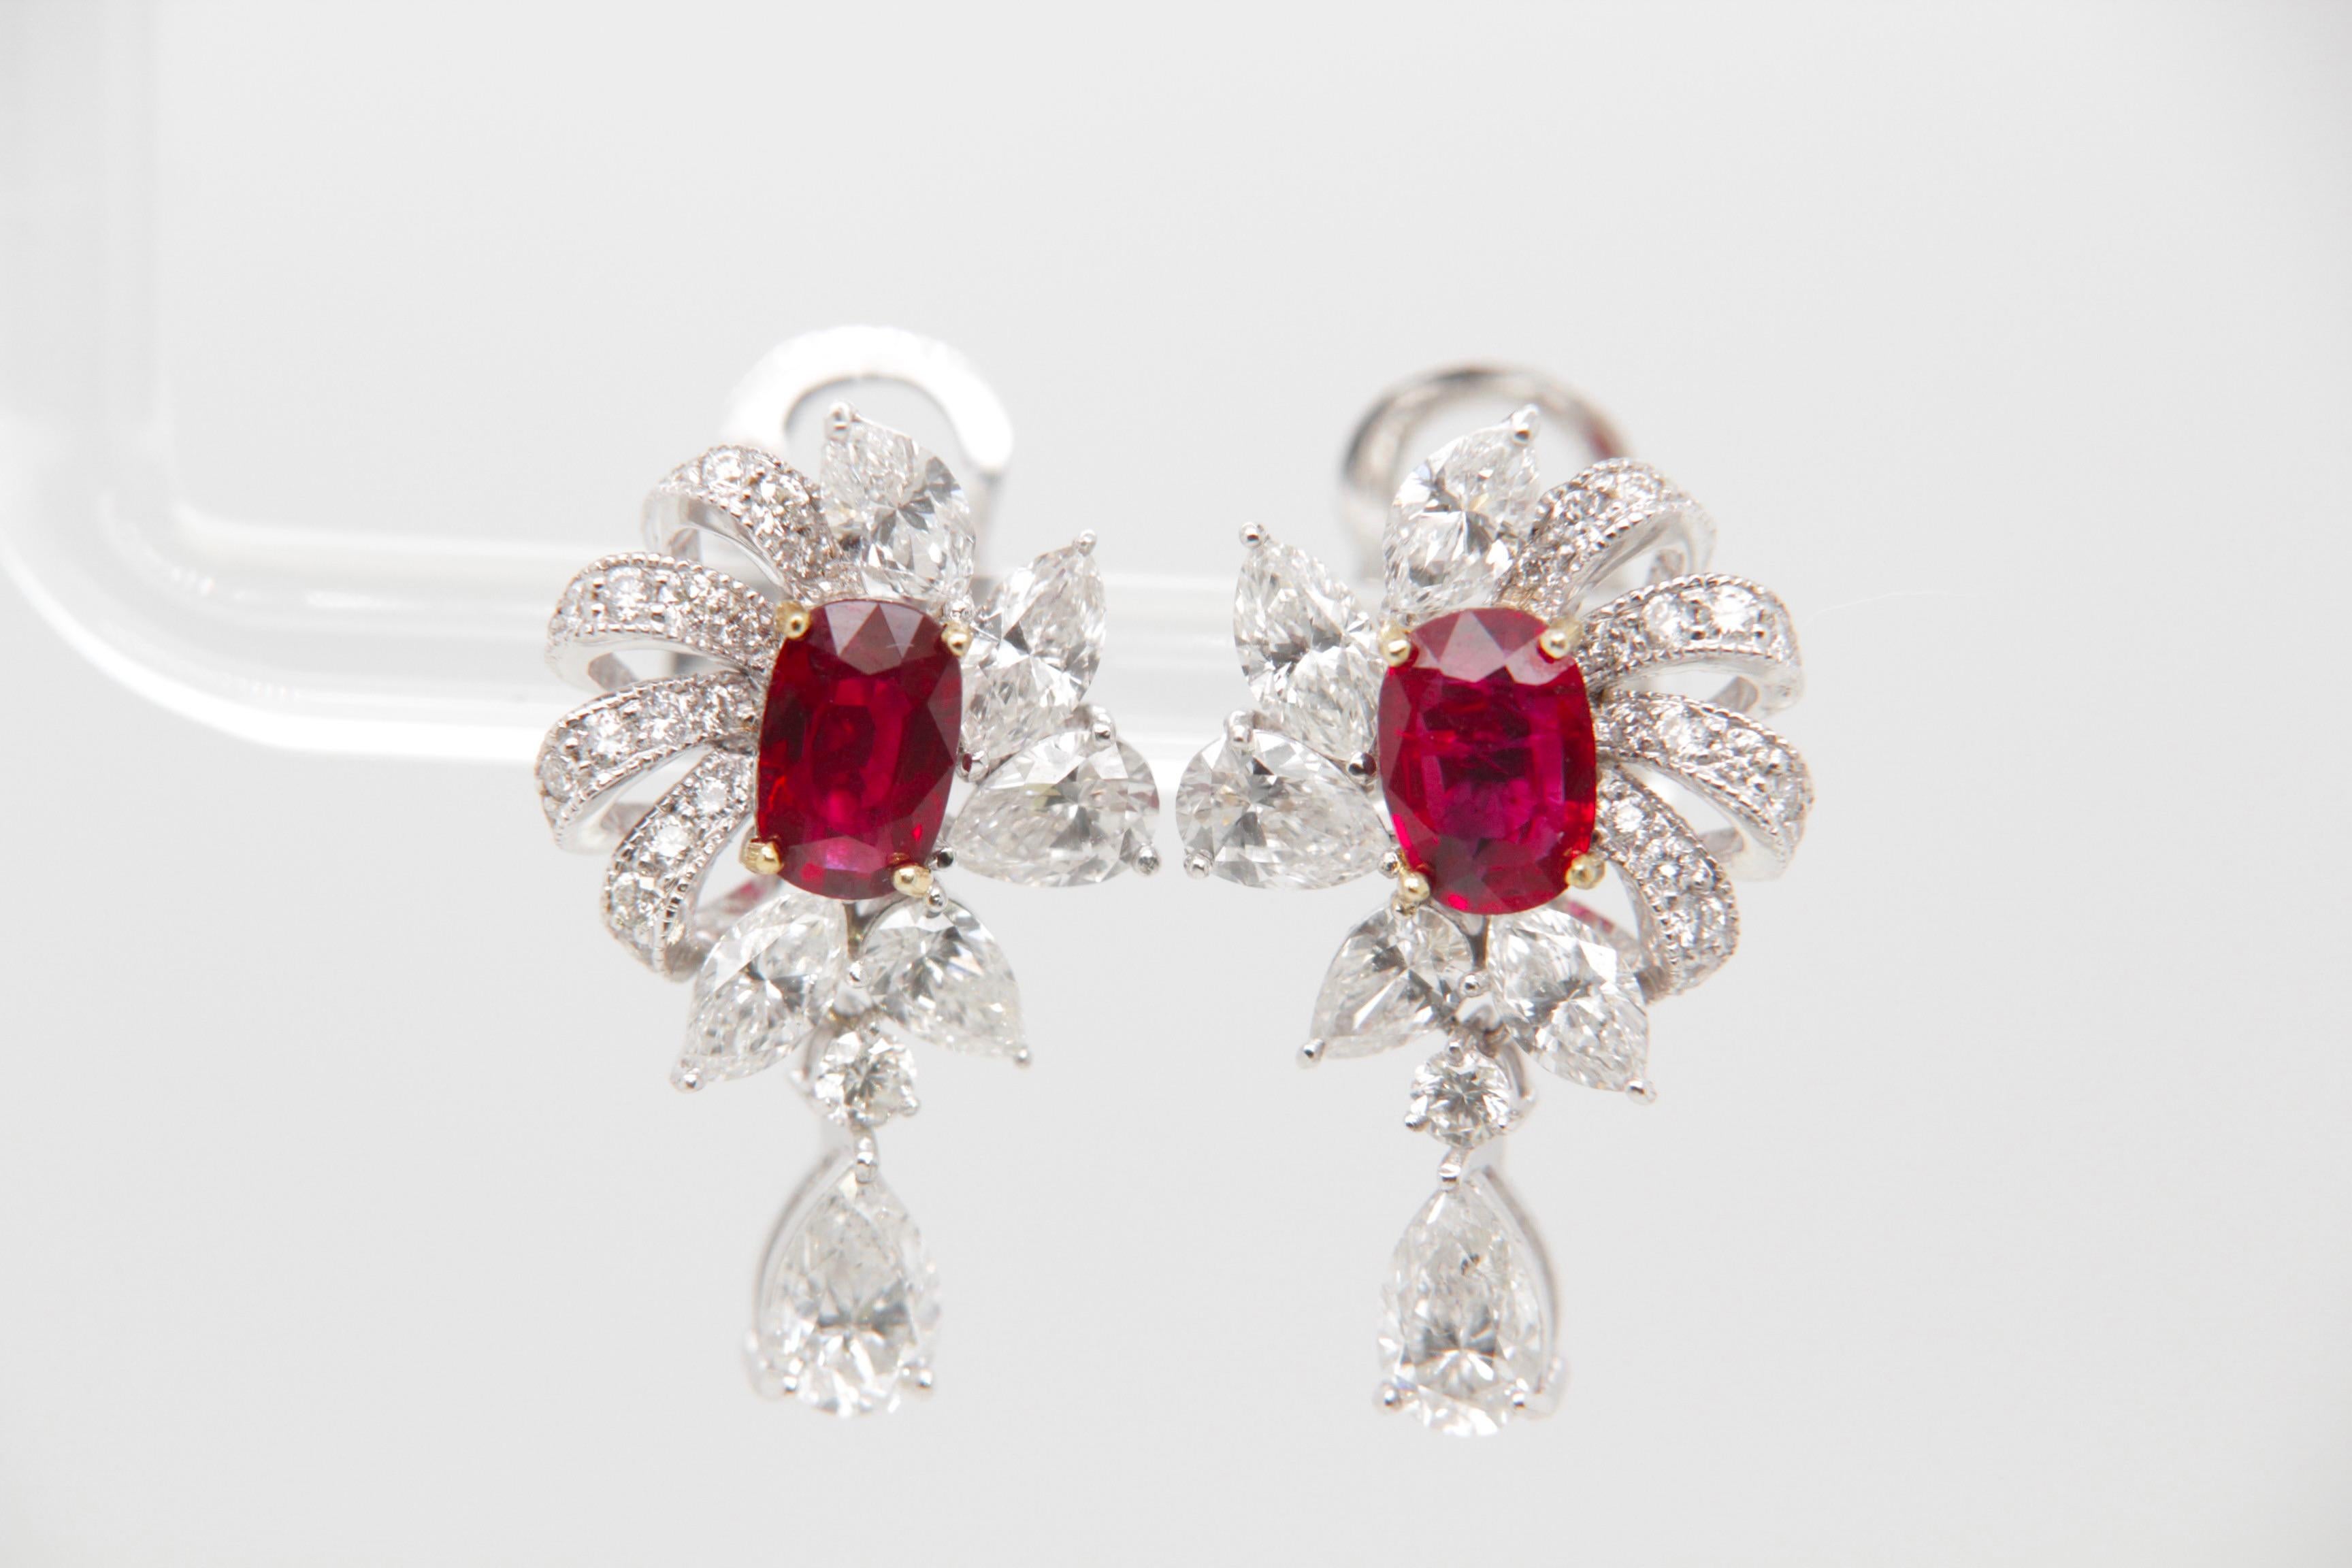 Diese zeitlosen Rubin- und Diamantohrringe von Rewa Jewelry sind eine harmonische Mischung aus klassischer Inspiration und zeitgenössischer Eleganz - ein exquisites Meisterwerk, das die Hingabe der Marke für höchste Handwerkskunst und dauerhafte